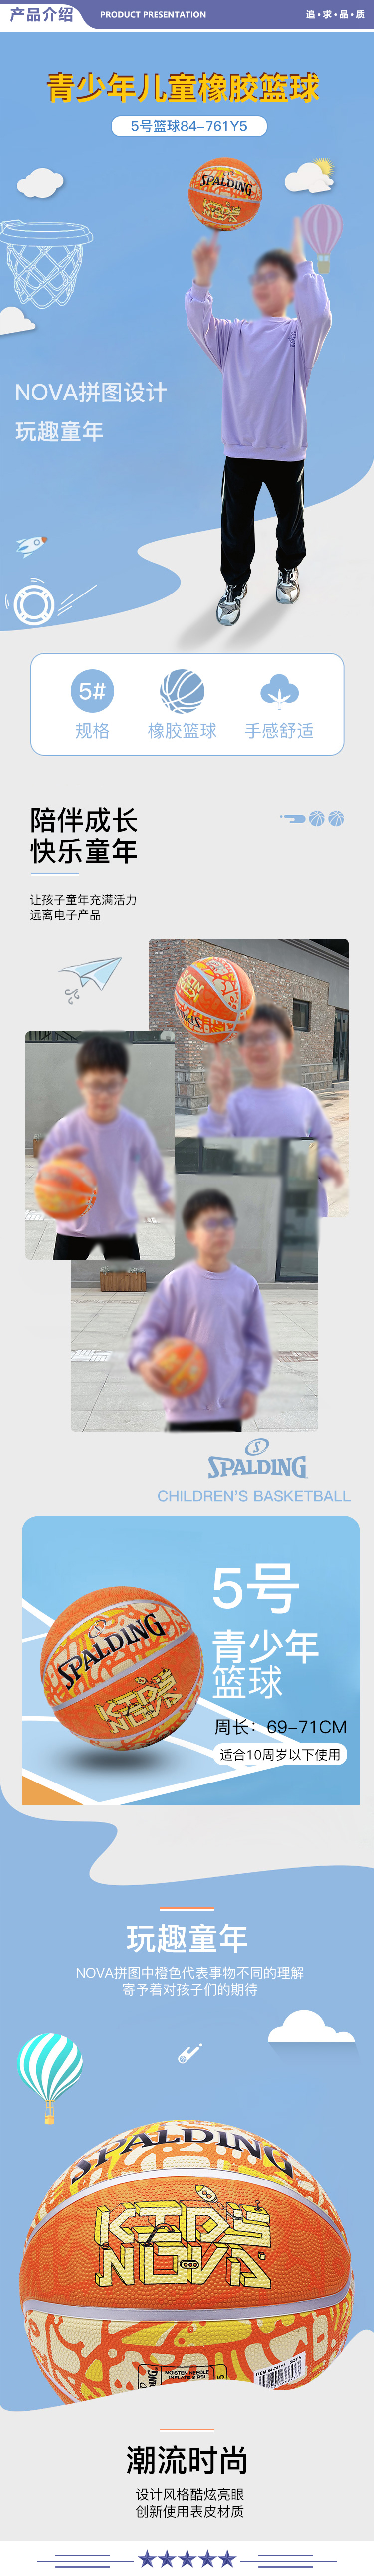 斯伯丁 84-761Y5 5号篮球NOVA拼图儿童青少年室外橡胶篮球橙色 2.jpg